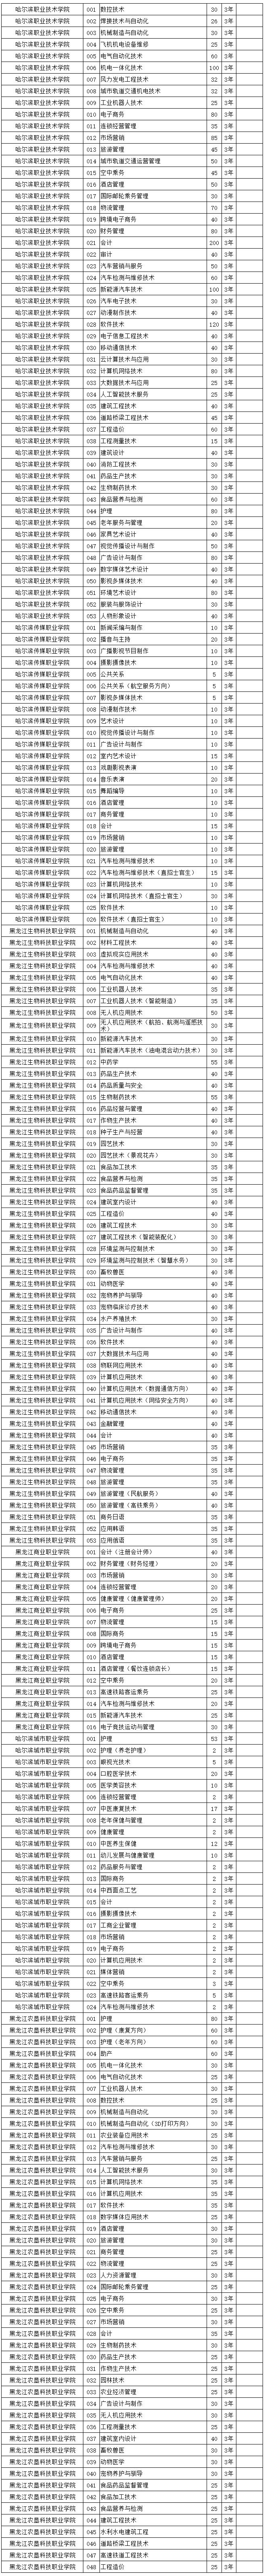 2020年黑龙江省高职院校单独招生计划公布